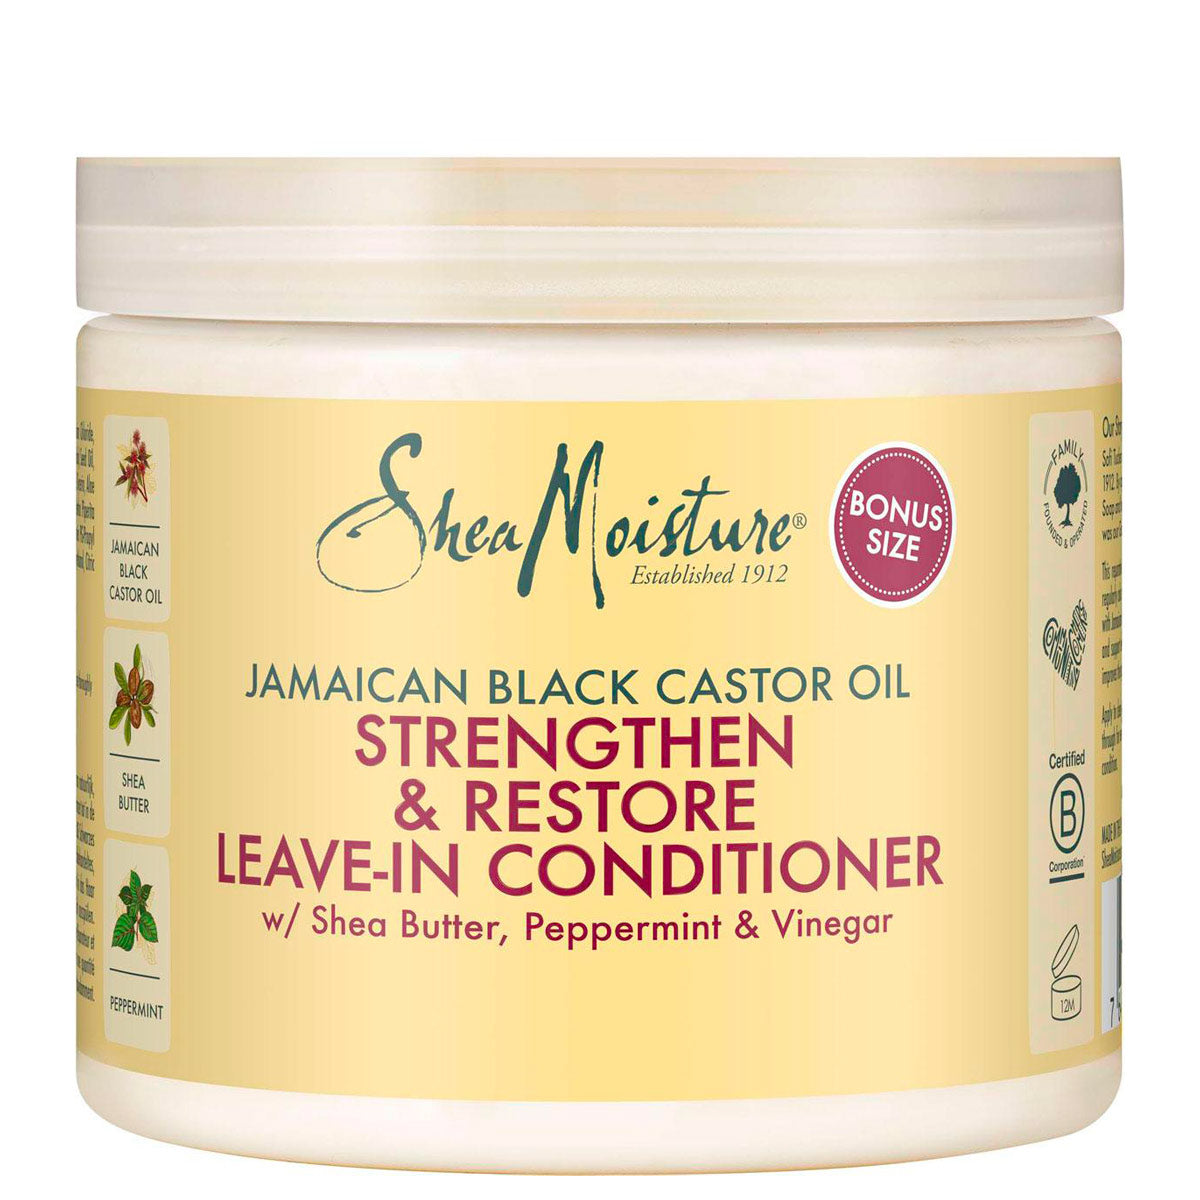 Le Jamaican Black Castor Oil Leave-In Conditioner de Shea Moisture nourrit, hydrate et procure de l'élasticité a vos cheveux pour les rendre plus résistants.